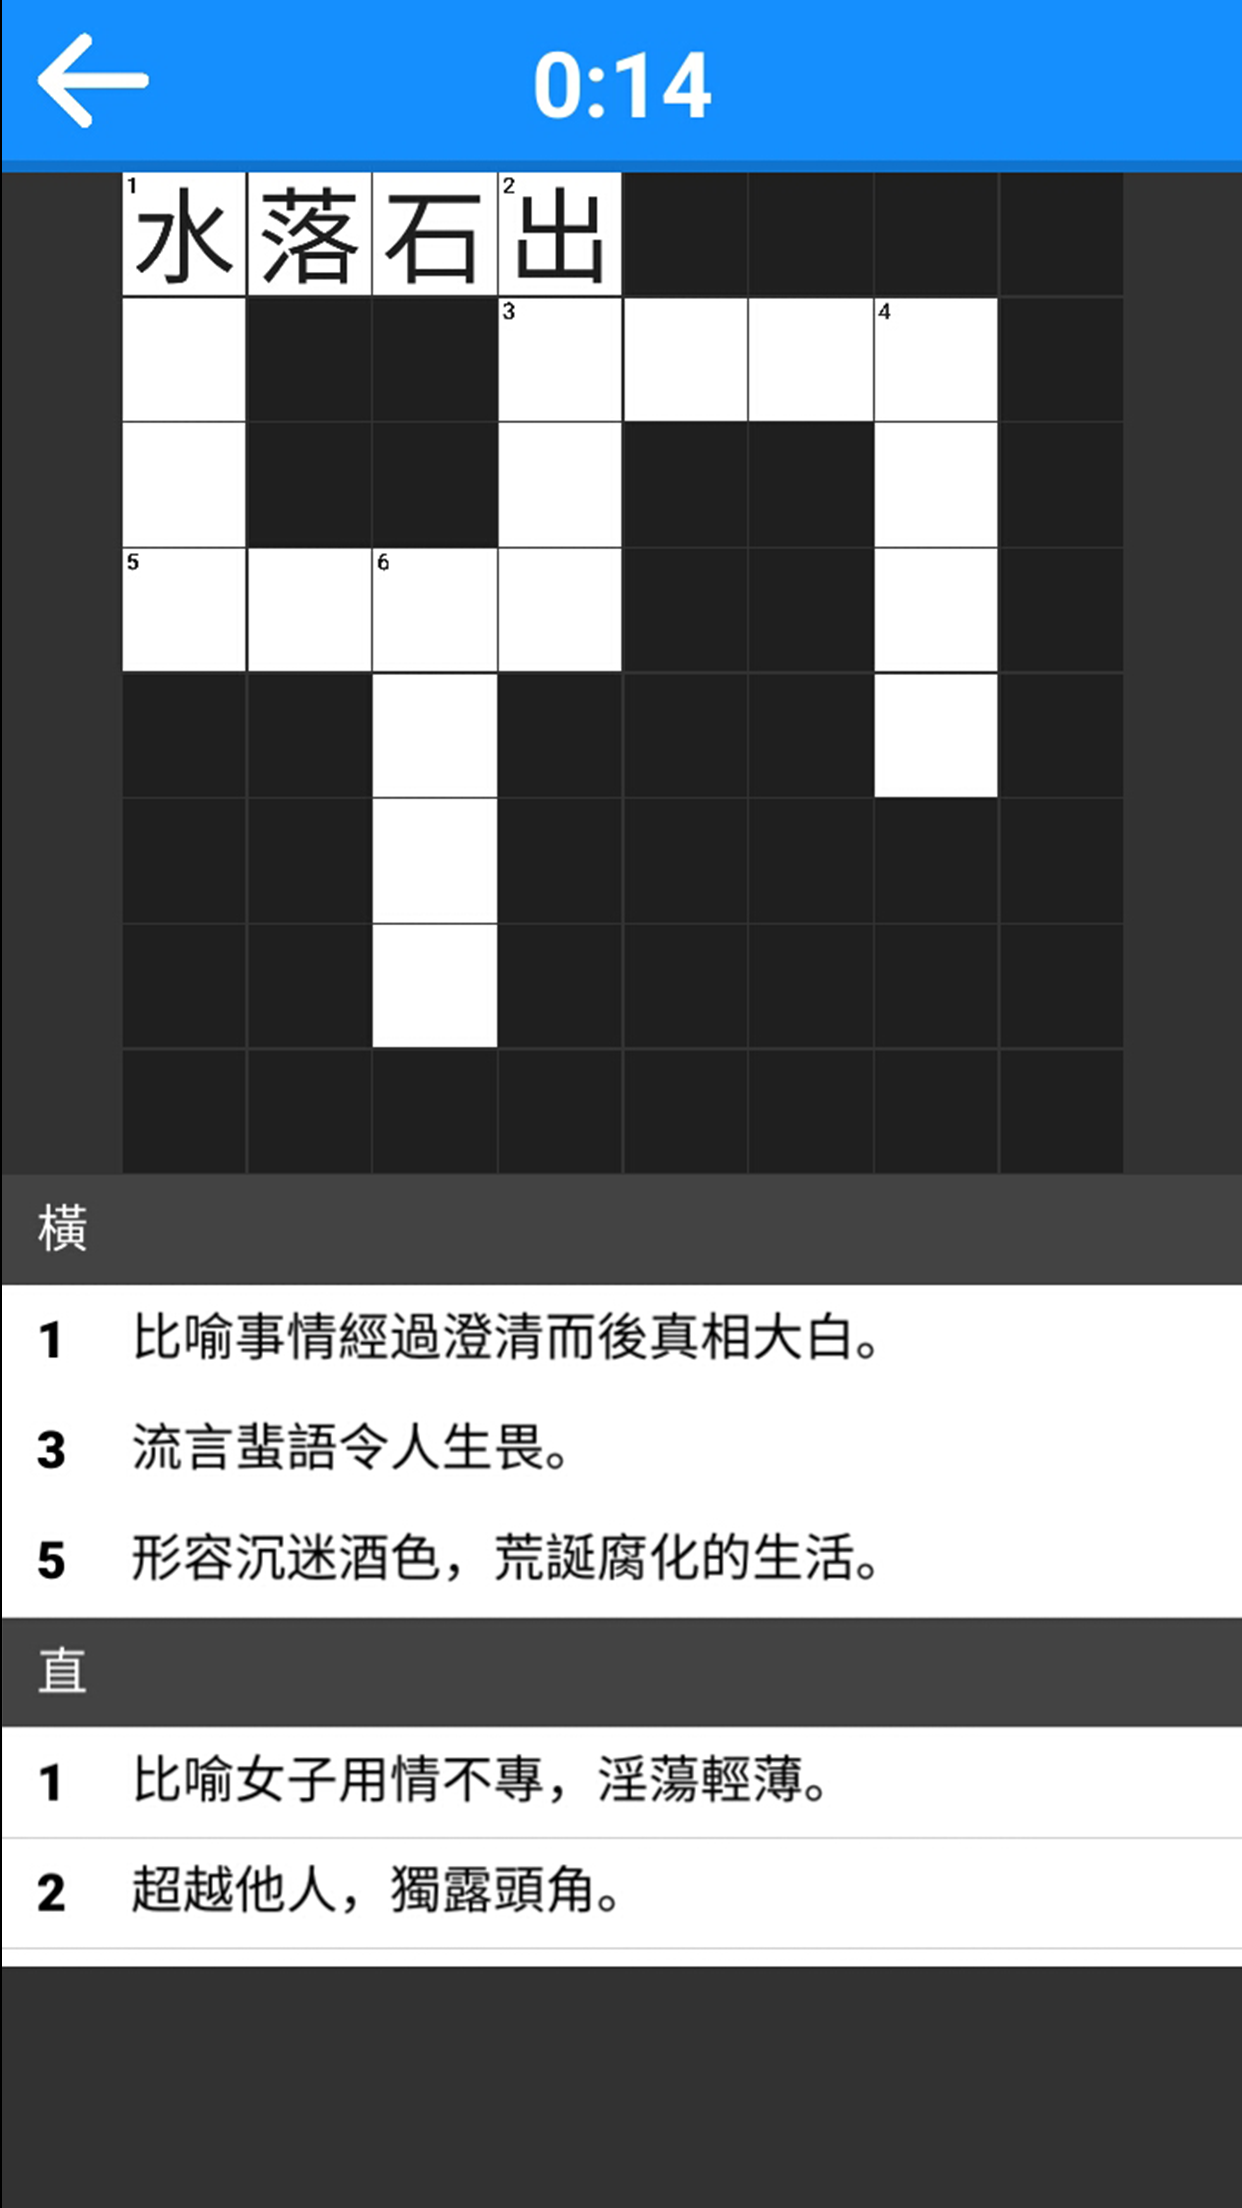 方格猜成语是什么成语_疯狂猜成语答案黑色方块这一关是什么成语(3)